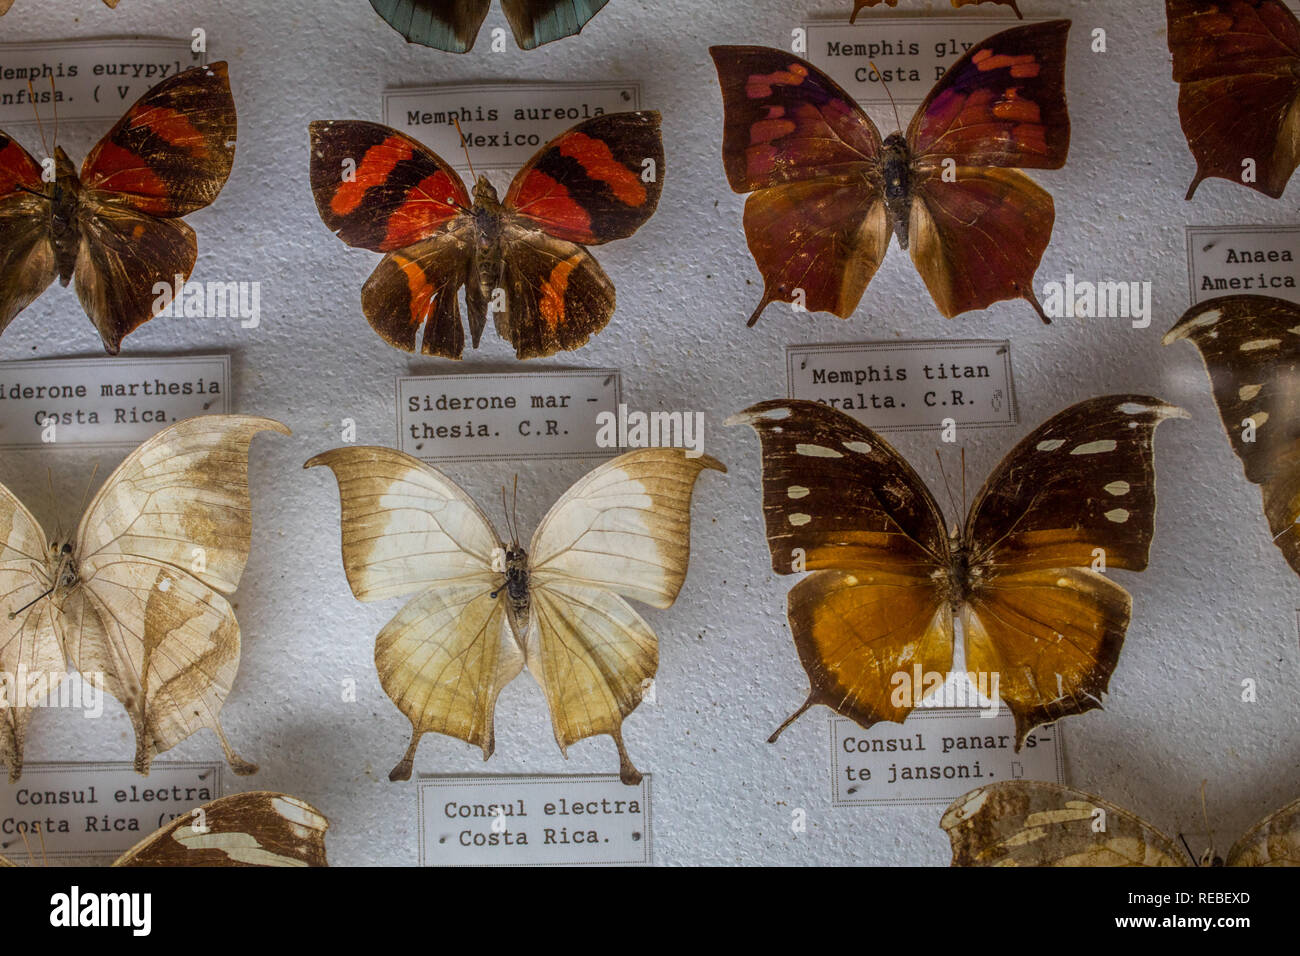 Una colección entomológica de hermosas mariposas anclados en un museo de Historia Natural. Con etiquettes para su identificación. Foto de stock